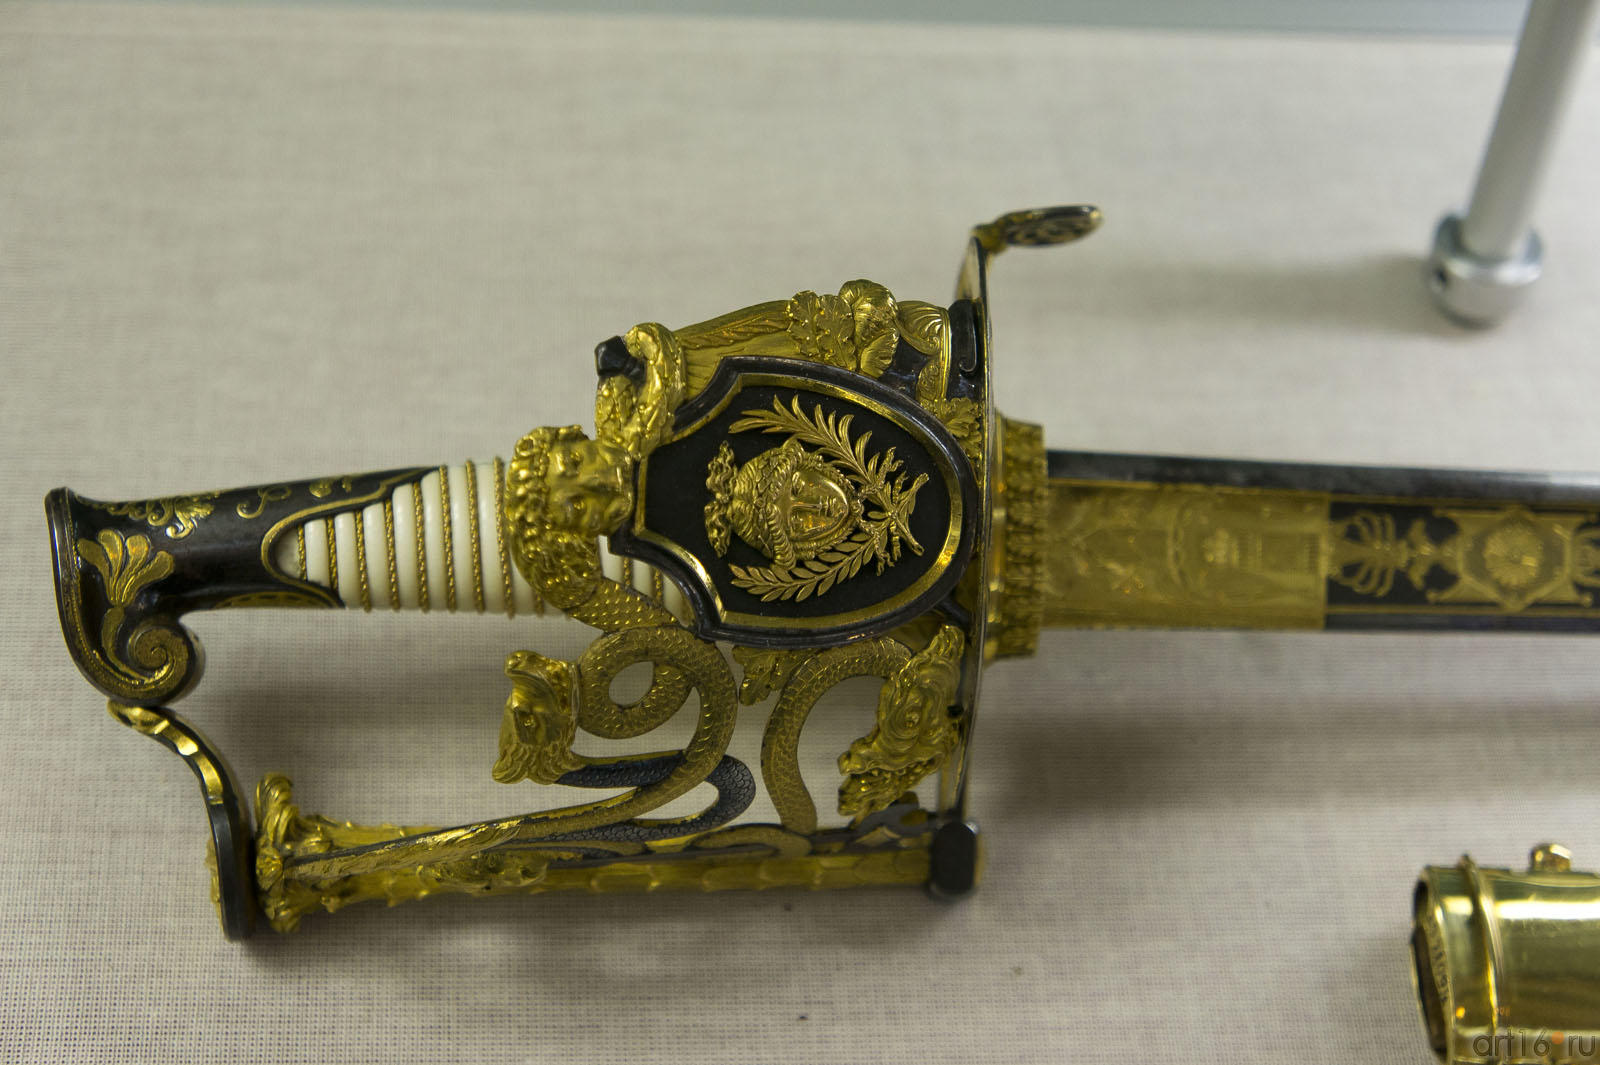 Сабля парадная, фрагмент::Художественное оружие из собрания Государственного Эрмитажа